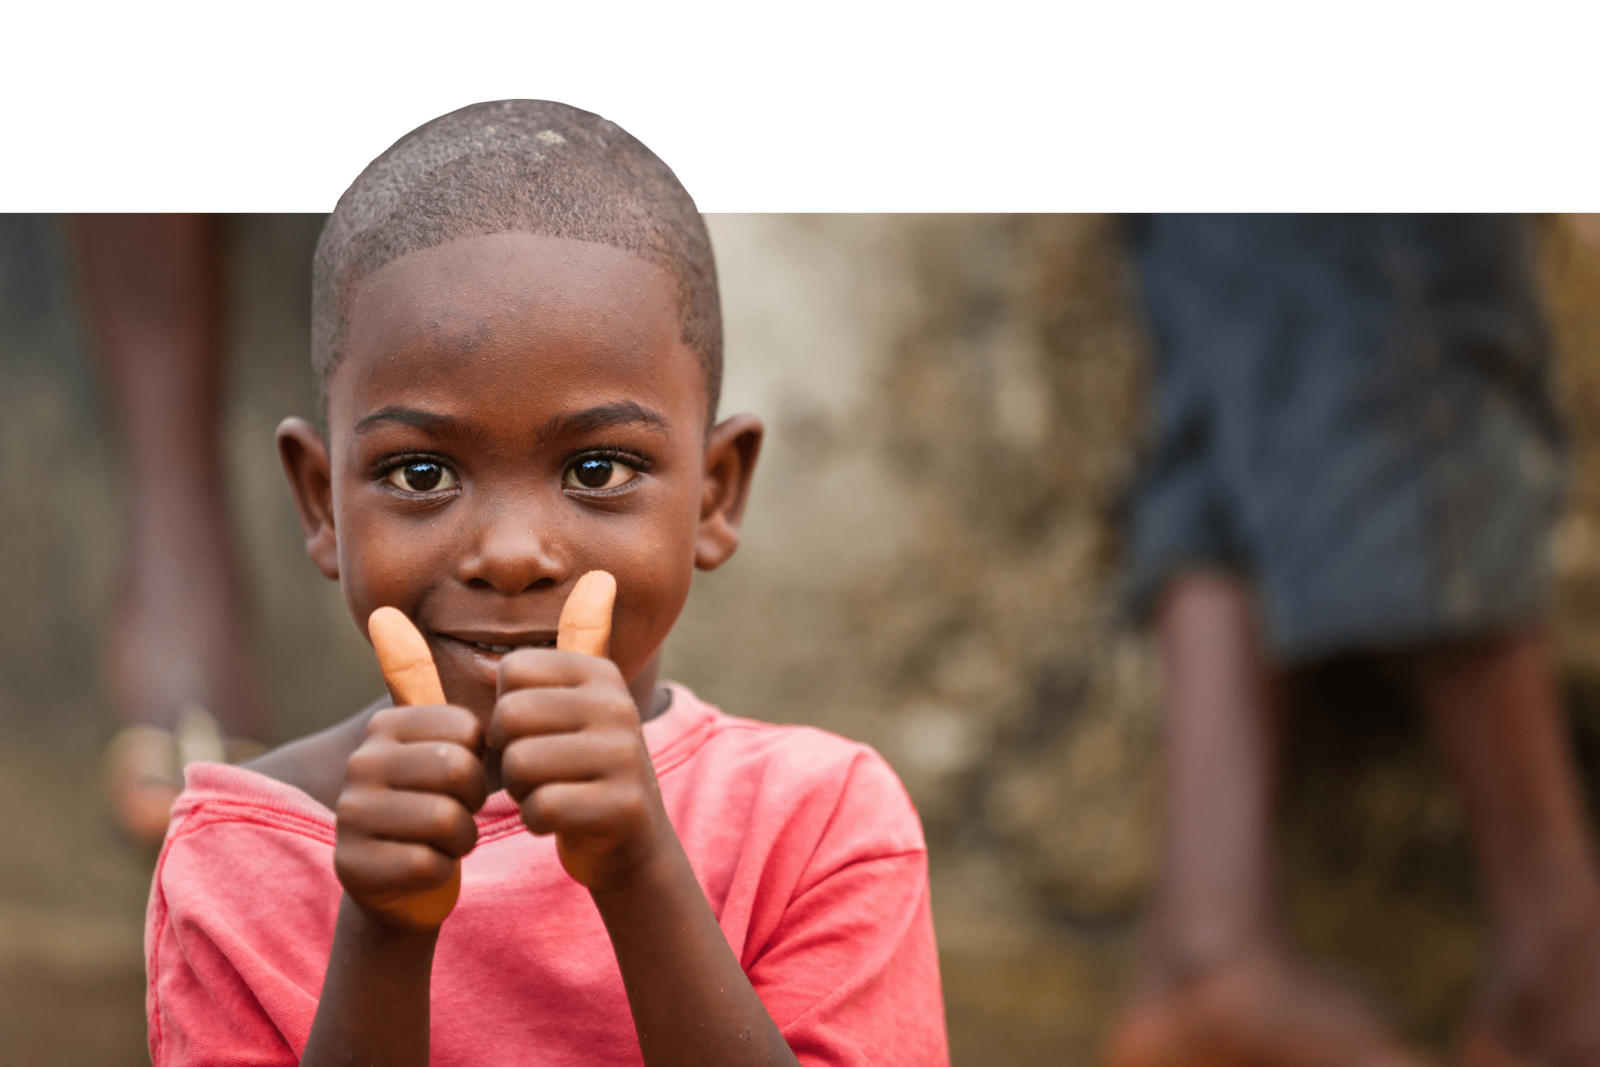 Quỹ Đầu tư cho trẻ em là một tổ chức phi lợi nhuận nhằm hỗ trợ cho trẻ em khắp nơi trên thế giới. Chúng tôi là người ủng hộ và muốn chia sẻ với bạn những hình ảnh đầy cảm xúc về những chuyến đi hỗ trợ của Quỹ này trong việc cứu giúp và nâng cao chất lượng cuộc sống của trẻ em khó khăn.